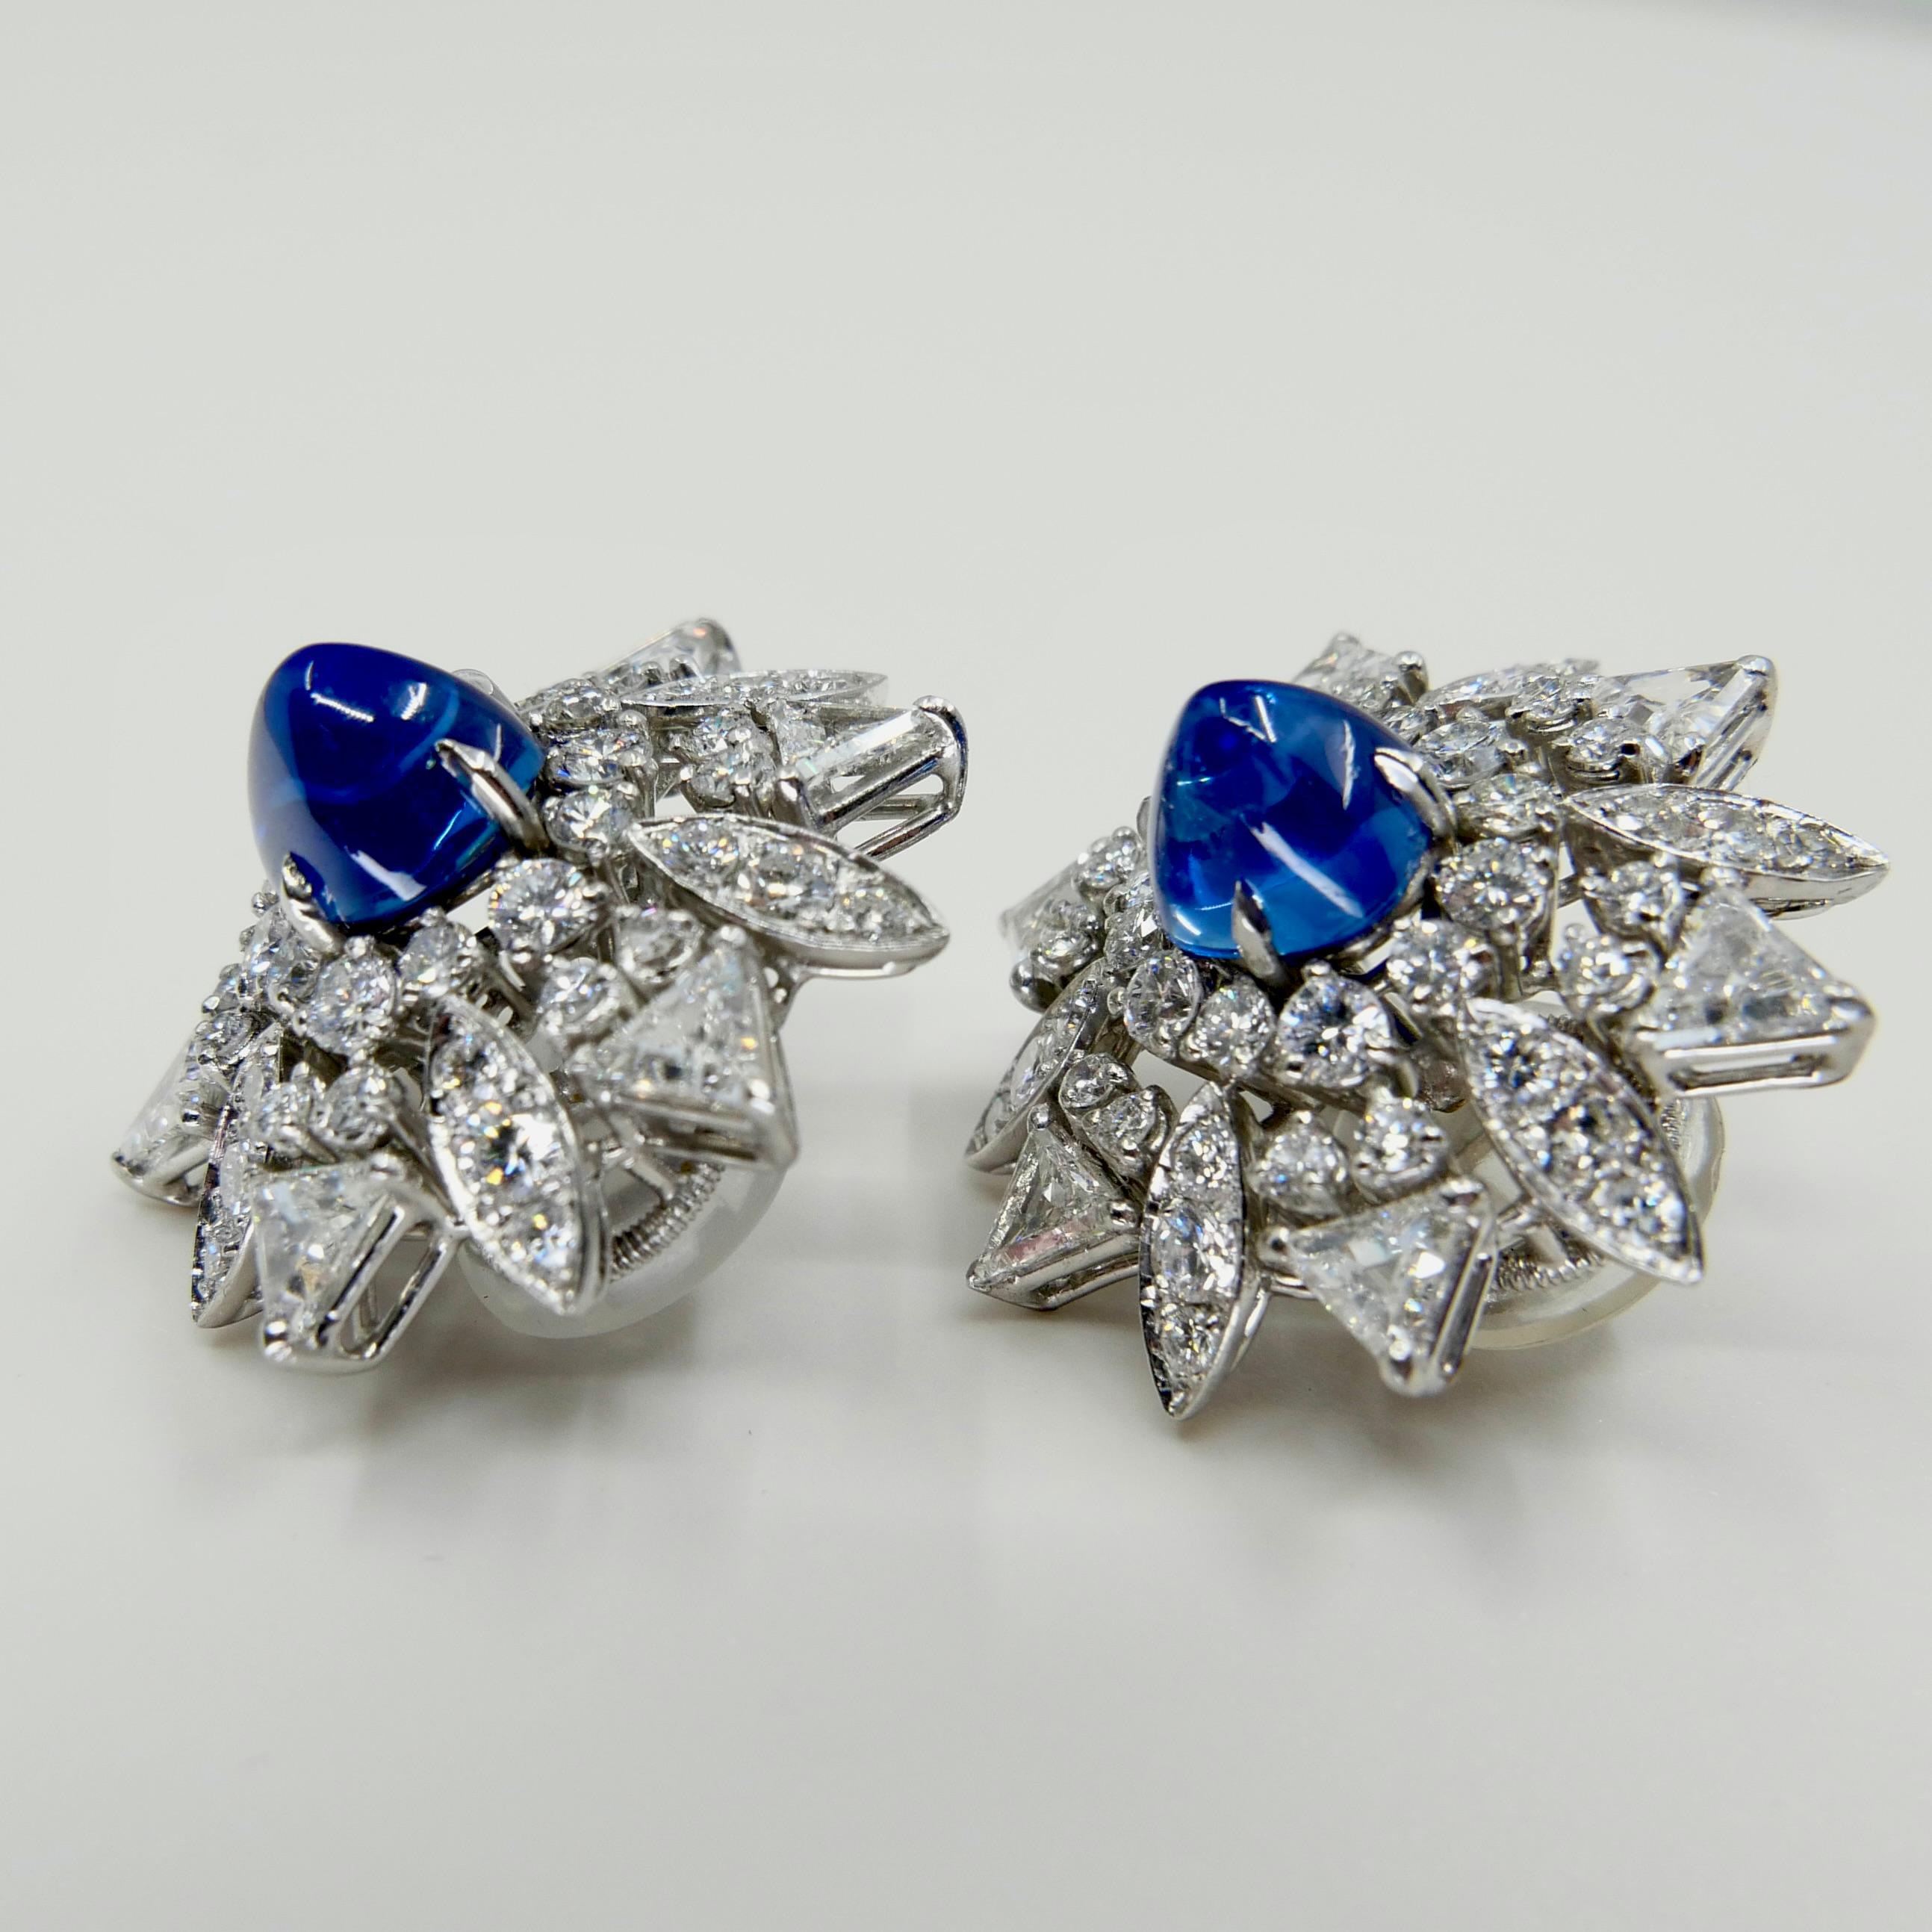 Certified Kashmir Sapphire No Heat Diamond Cluster Earrings, Cornflower Blue 2